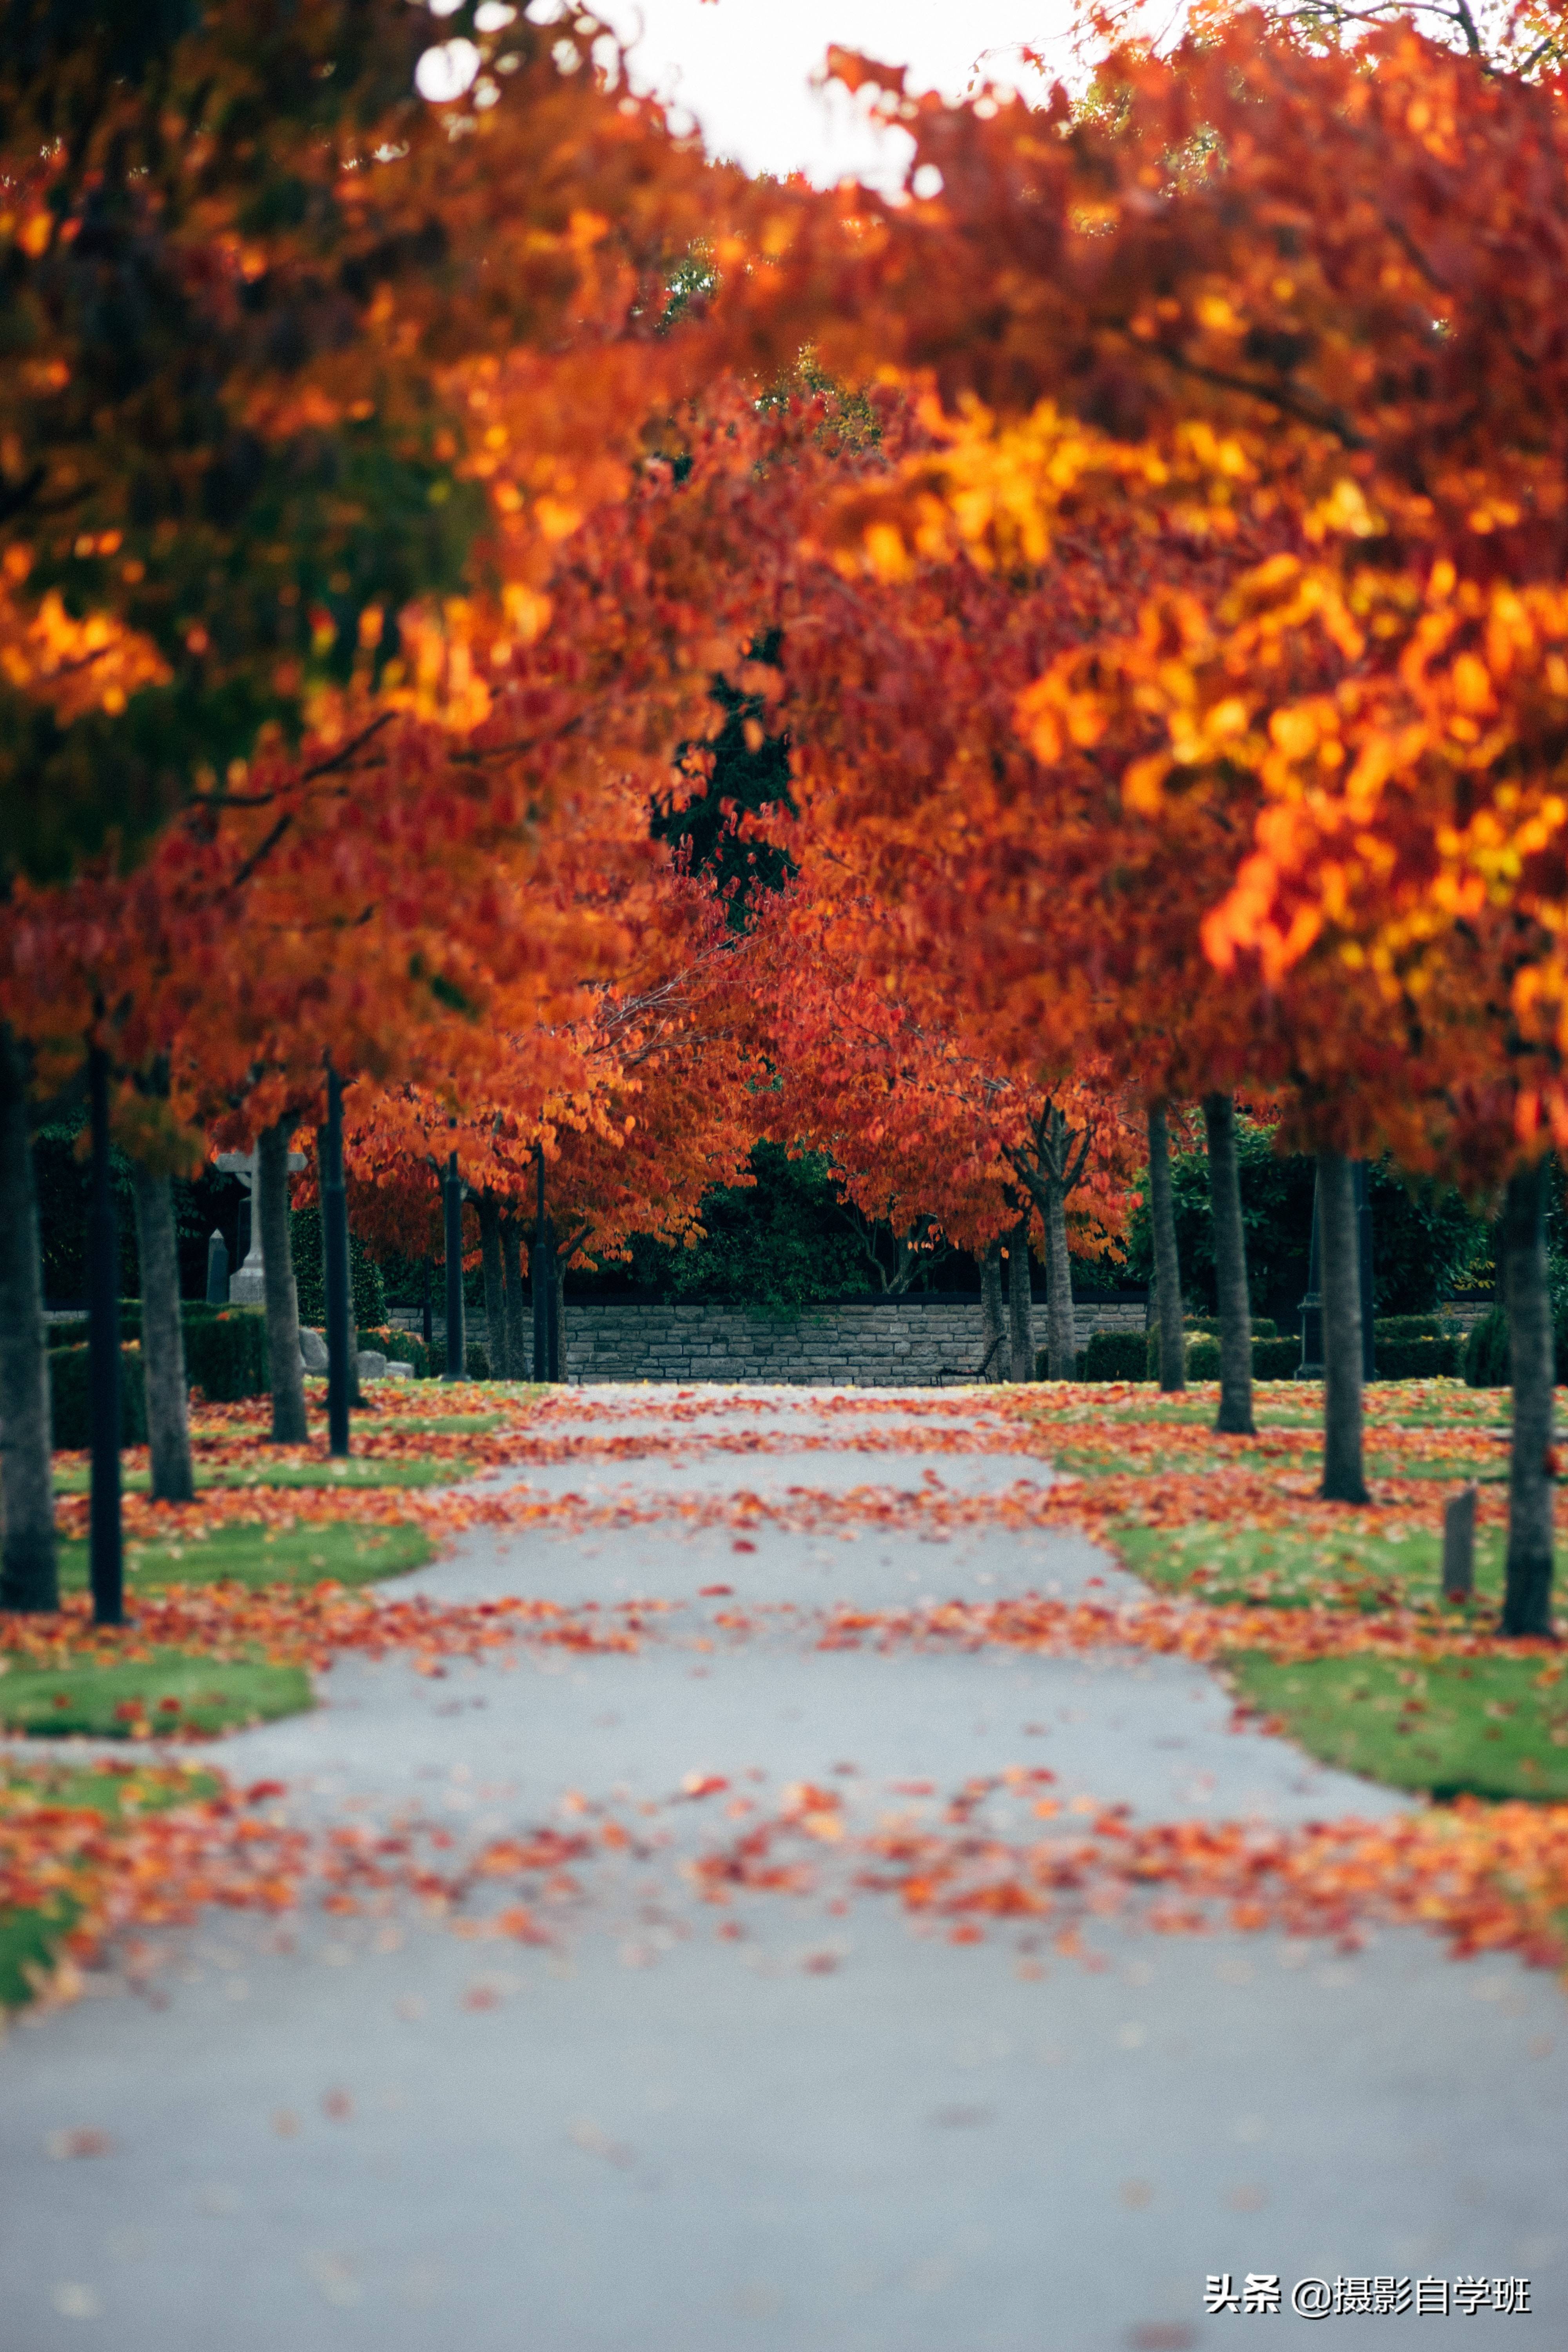 点评5张秋景照片累积拍摄经验帮助我们扬长避短